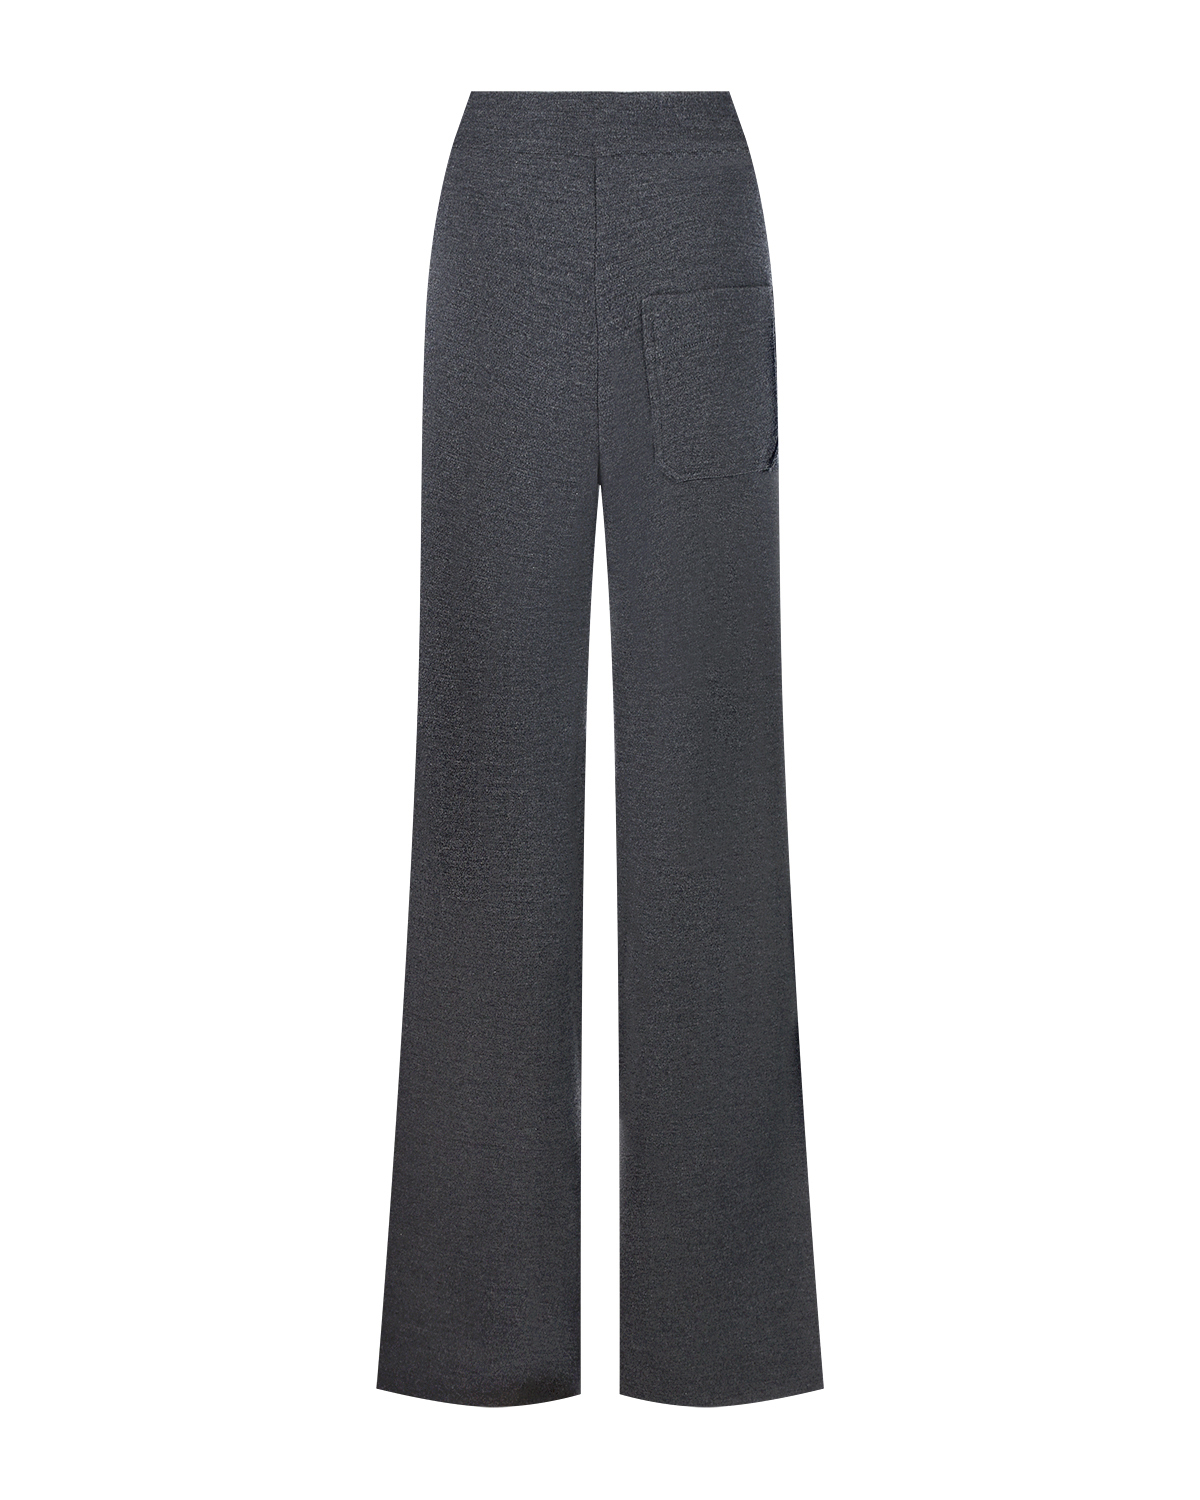 Темно-серые спортивные брюки со стрелками MRZ, размер 40, цвет нет цвета - фото 5